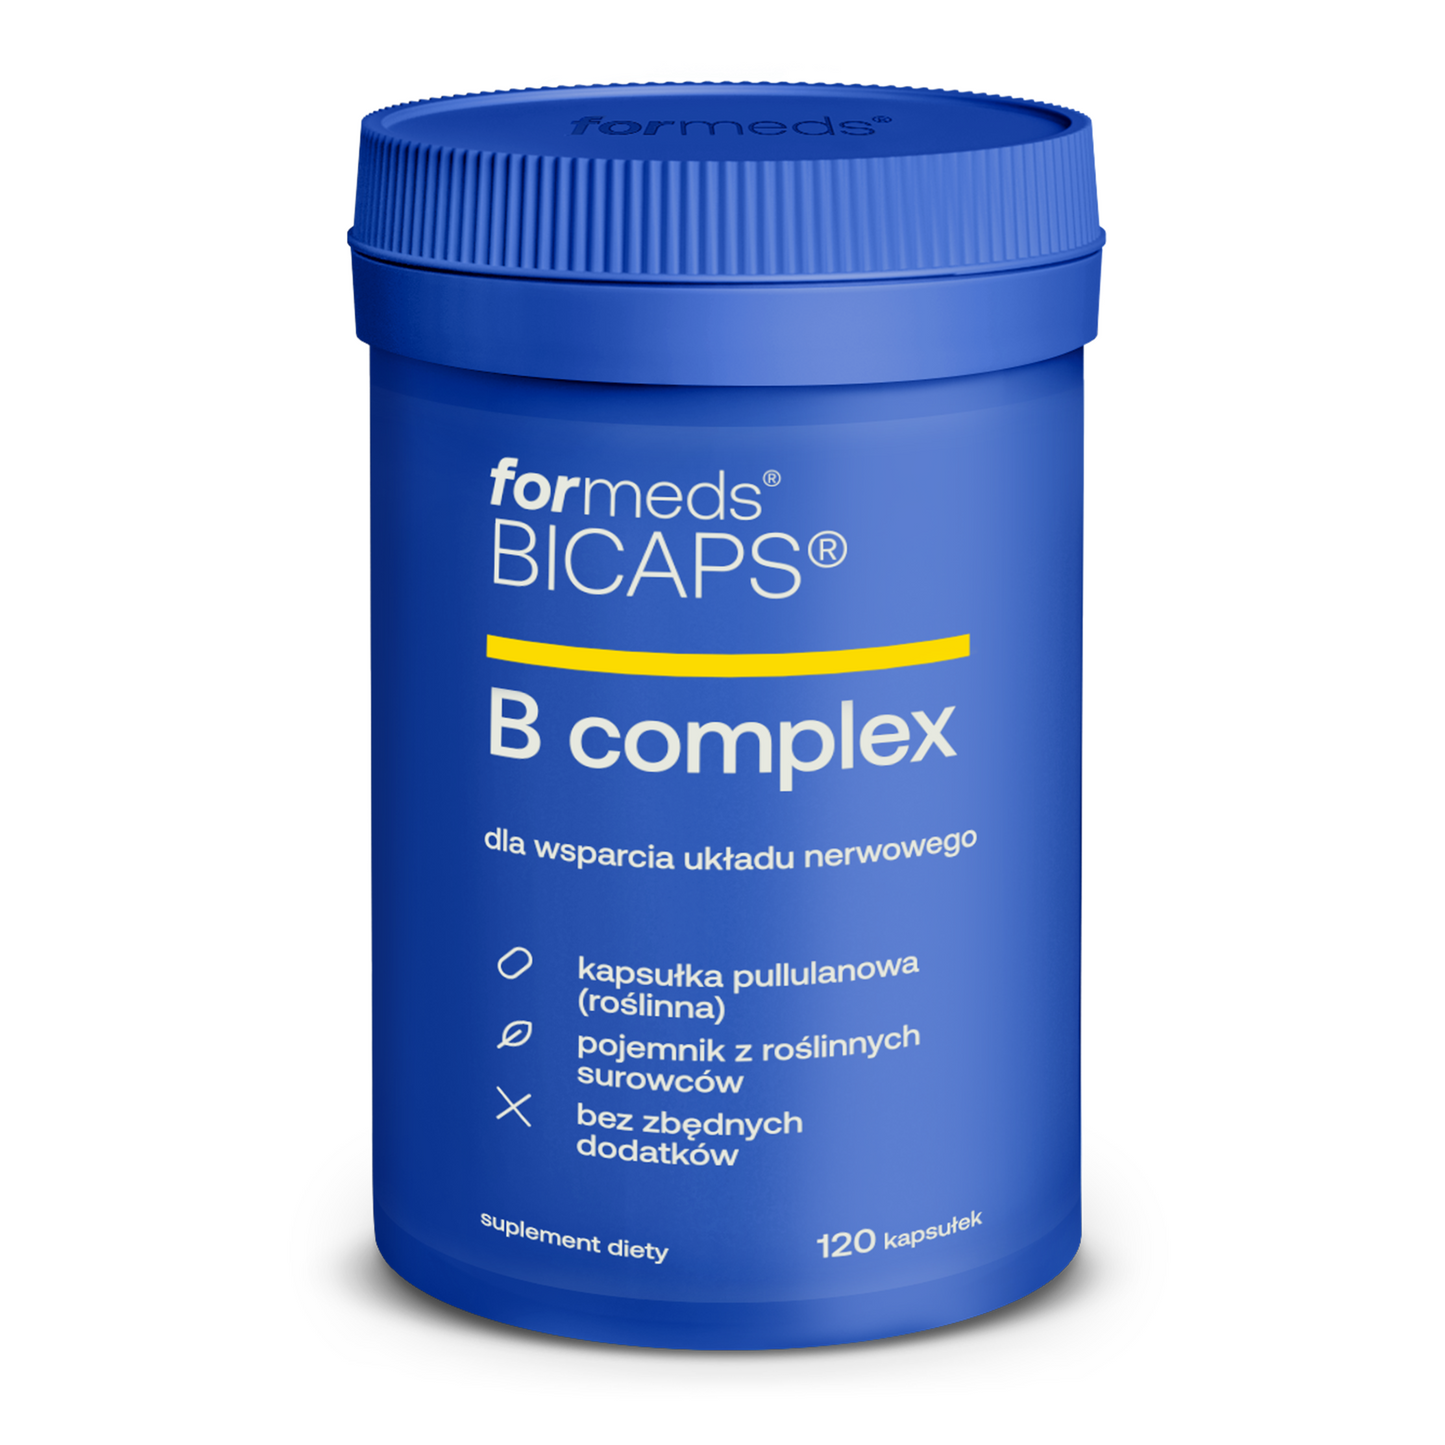 BICAPS B complex